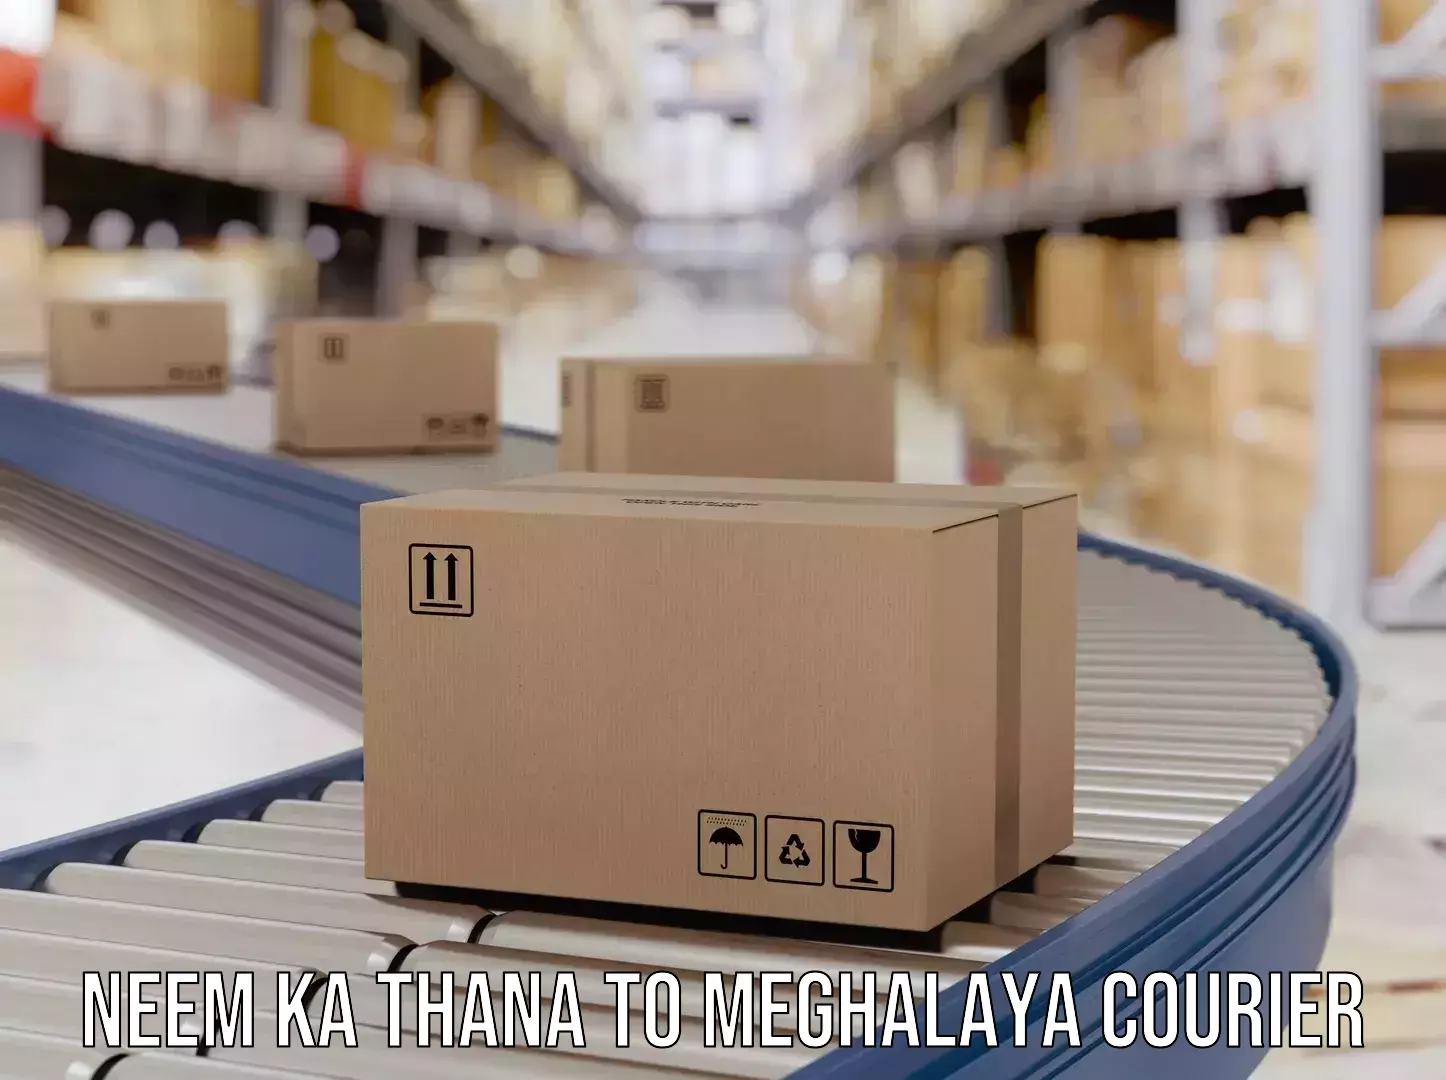 Personalized courier experiences Neem ka Thana to Meghalaya